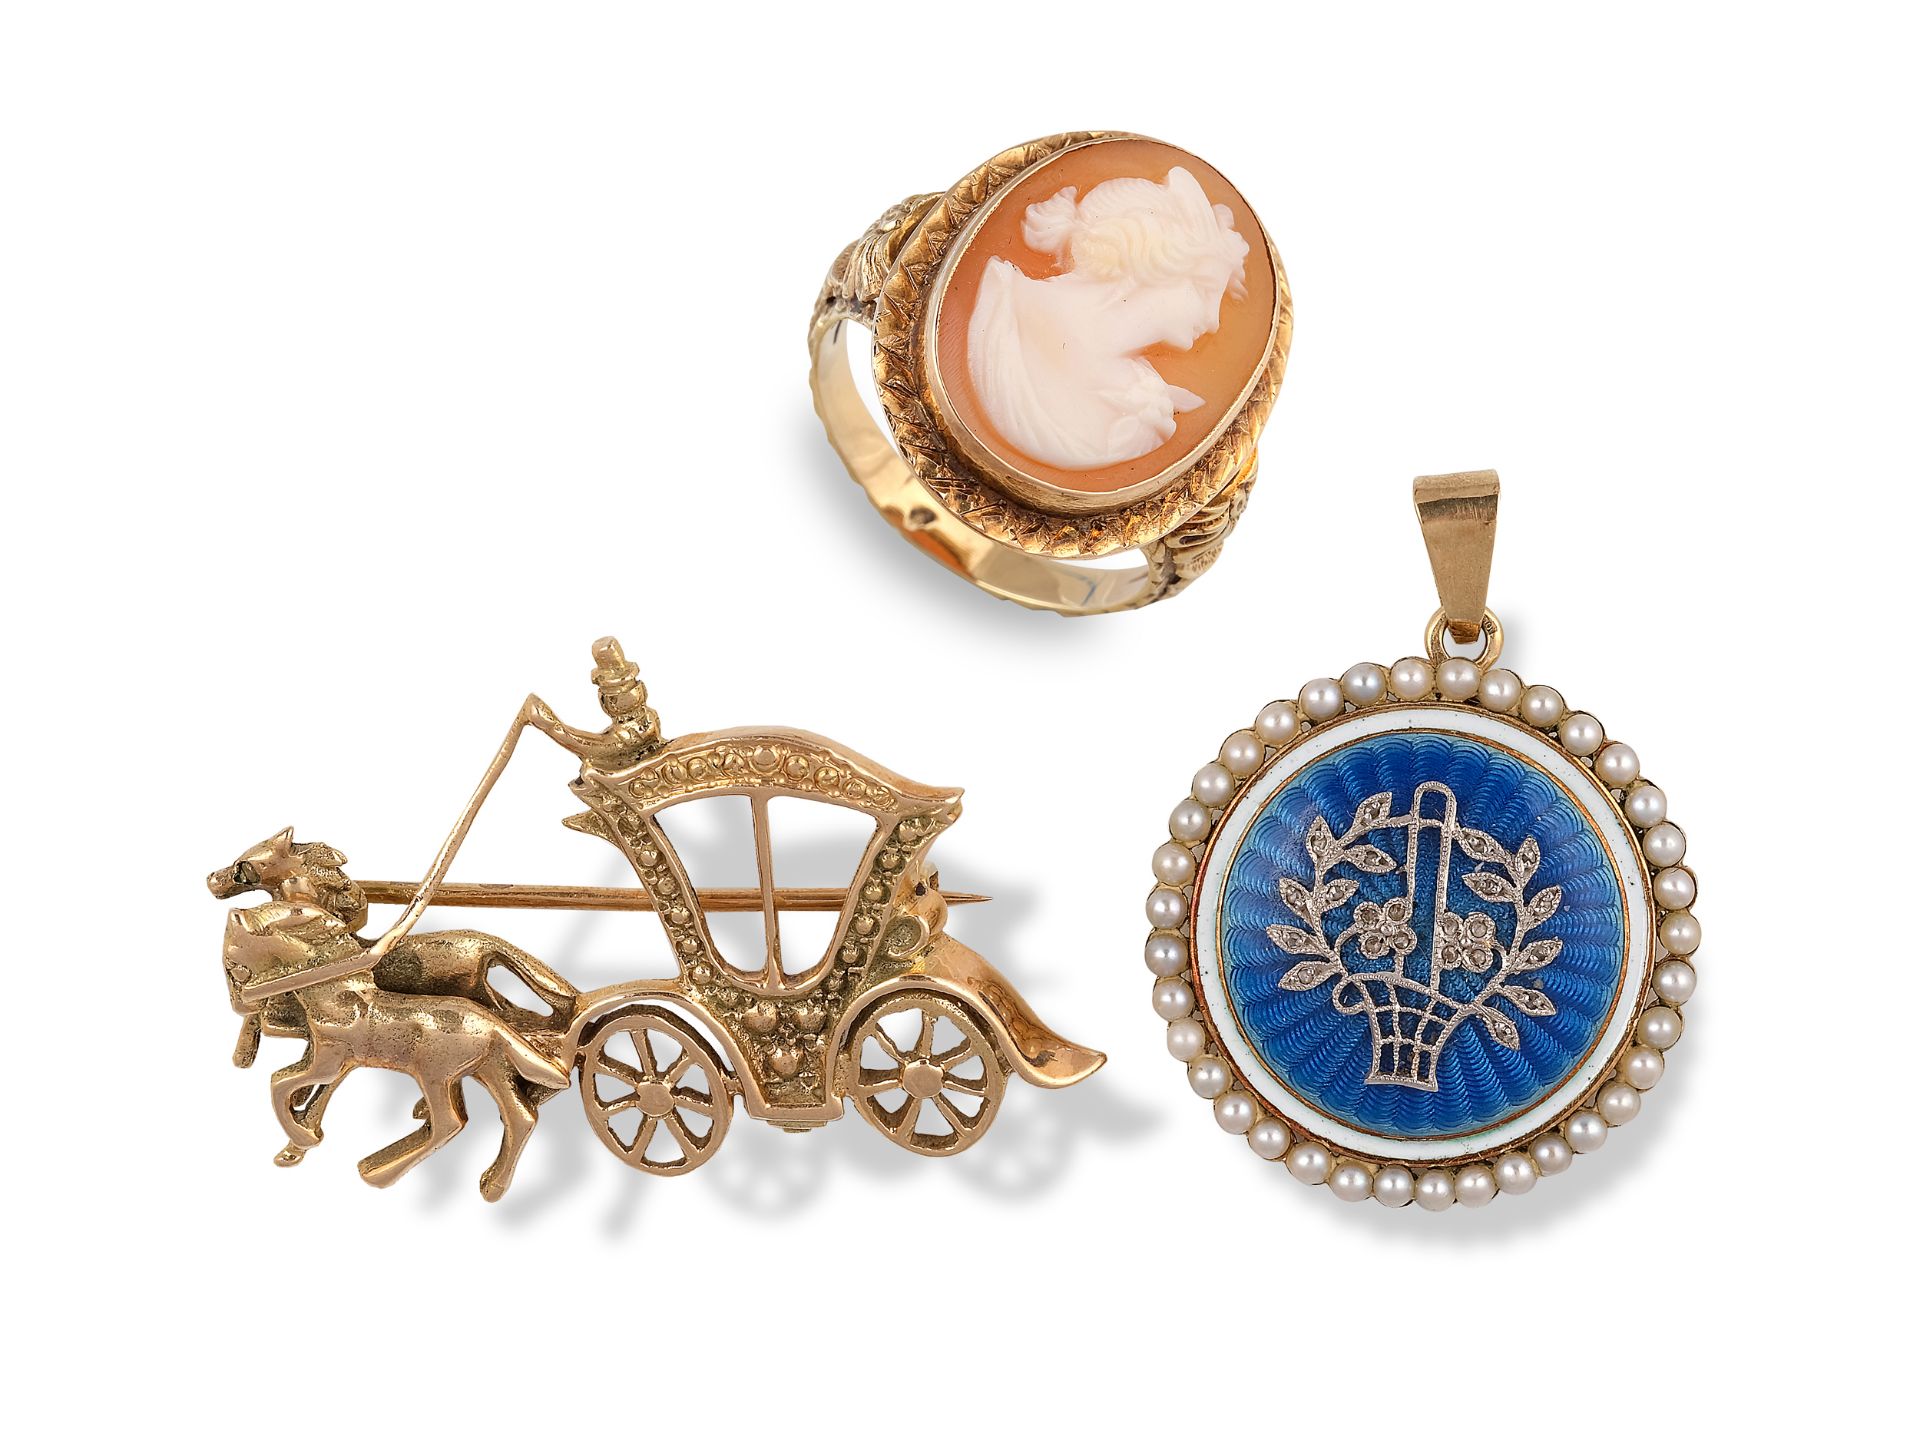 Mixed lot: 1 ring, 1 brooch & 1 medallion pendant